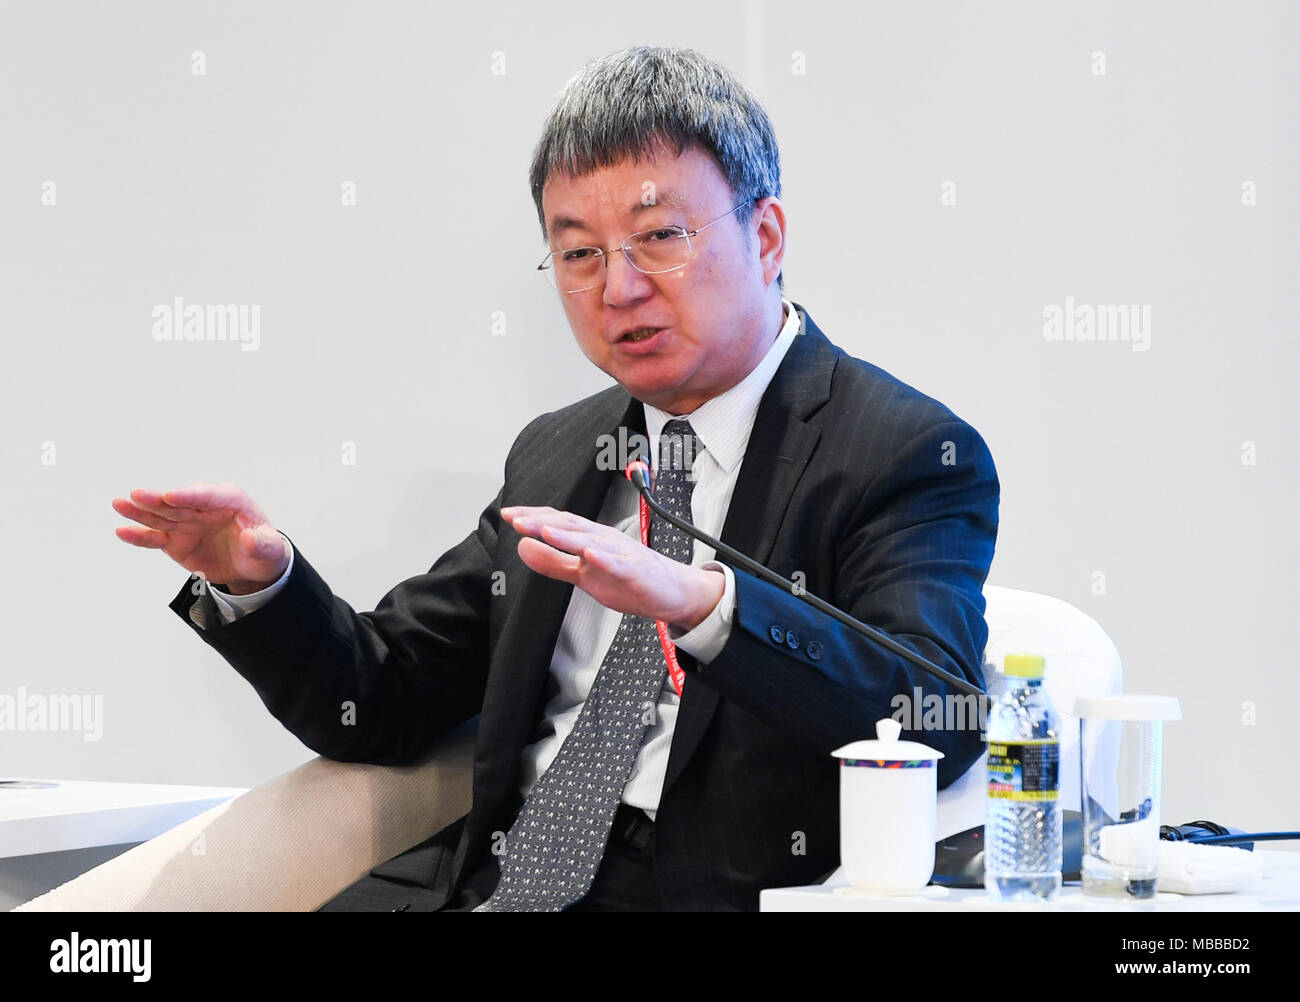 De Boao, provincia de Hainan de China. 10 abr, 2018. Zhu Min, Presidente del Instituto Nacional de Investigación Financiera de la Universidad de Tsinghua, habla en la sesión de "problemas estructurales de la economía de EE.UU." durante el Foro de Boao para Asia Conferencia Anual 2018 en Boao, sur de la provincia de Hainan de China, 10 de abril de 2018. Crédito: Yang Guanyu/Xinhua/Alamy Live News Foto de stock